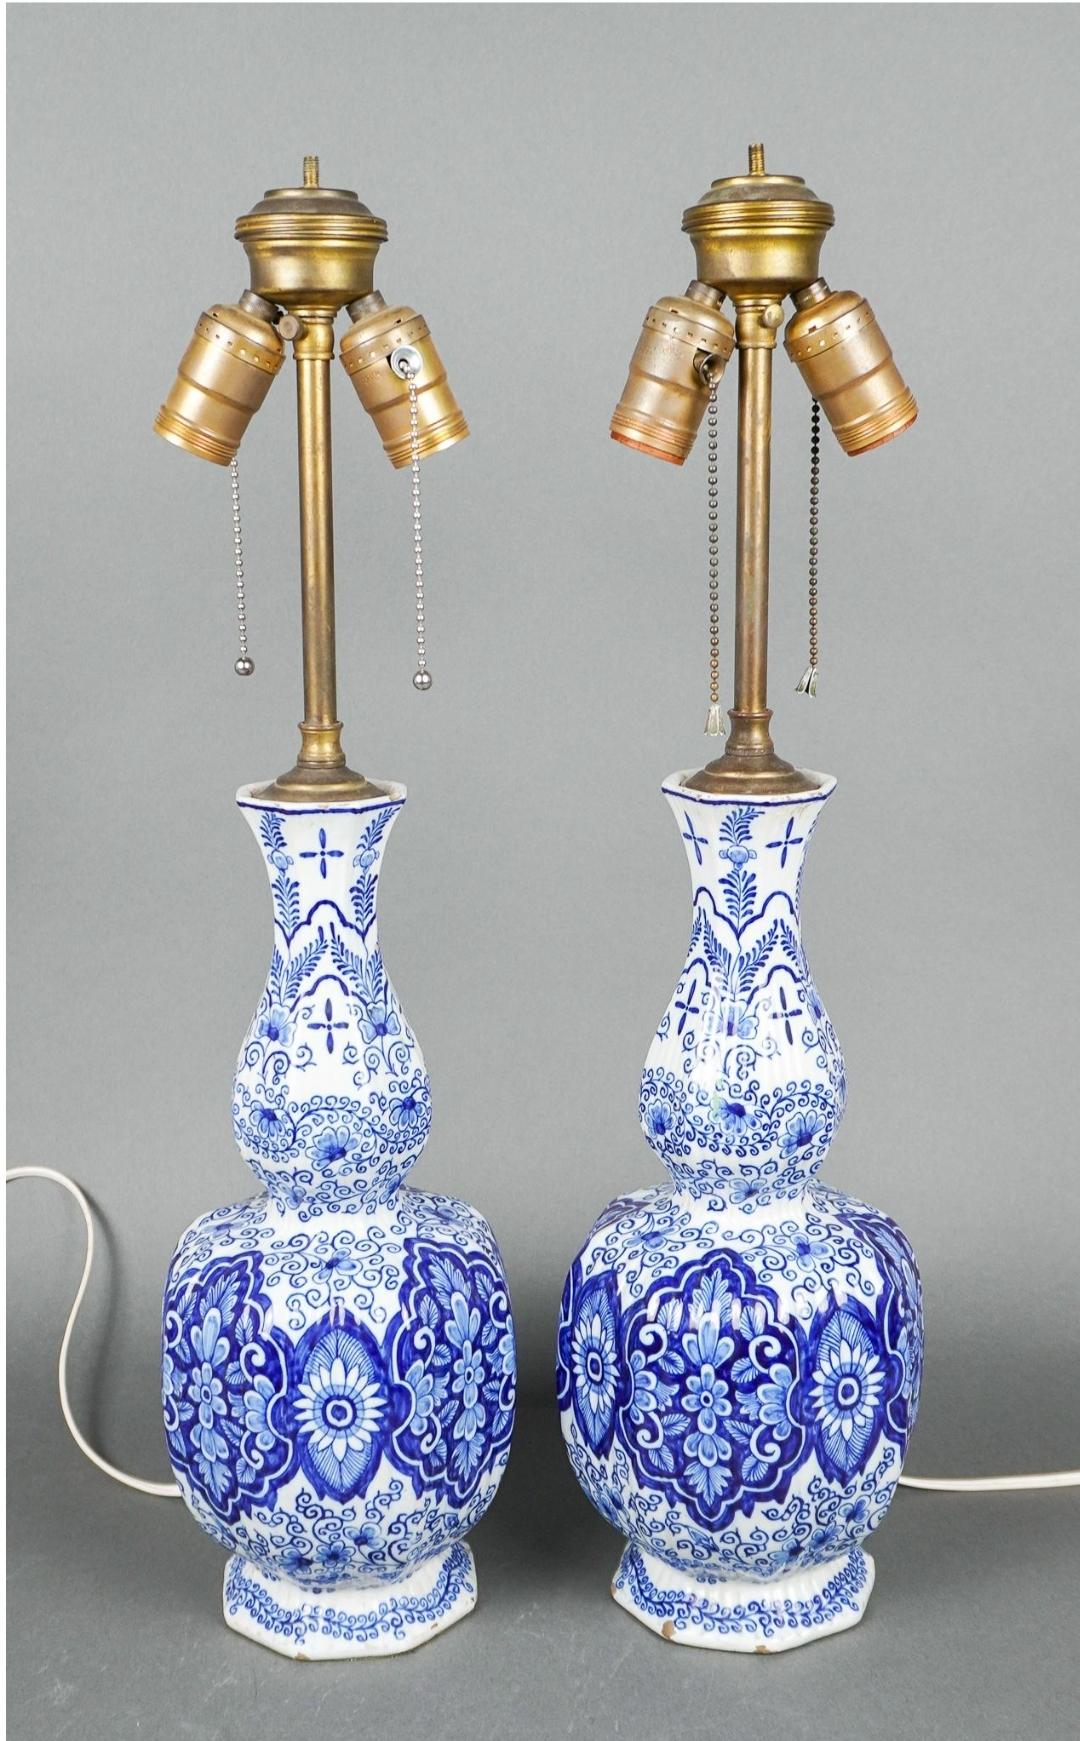 Ein äußerst seltenes, großes Paar antiker holländischer Delfter Fayence-Knaufvasen aus dem 18. Jahrhundert, montiert als Lampen, um 1770 von Van Duijn.
Eine klassische blau-weiße Farbpalette schmückt diese reichlich mit Blumen verzierten